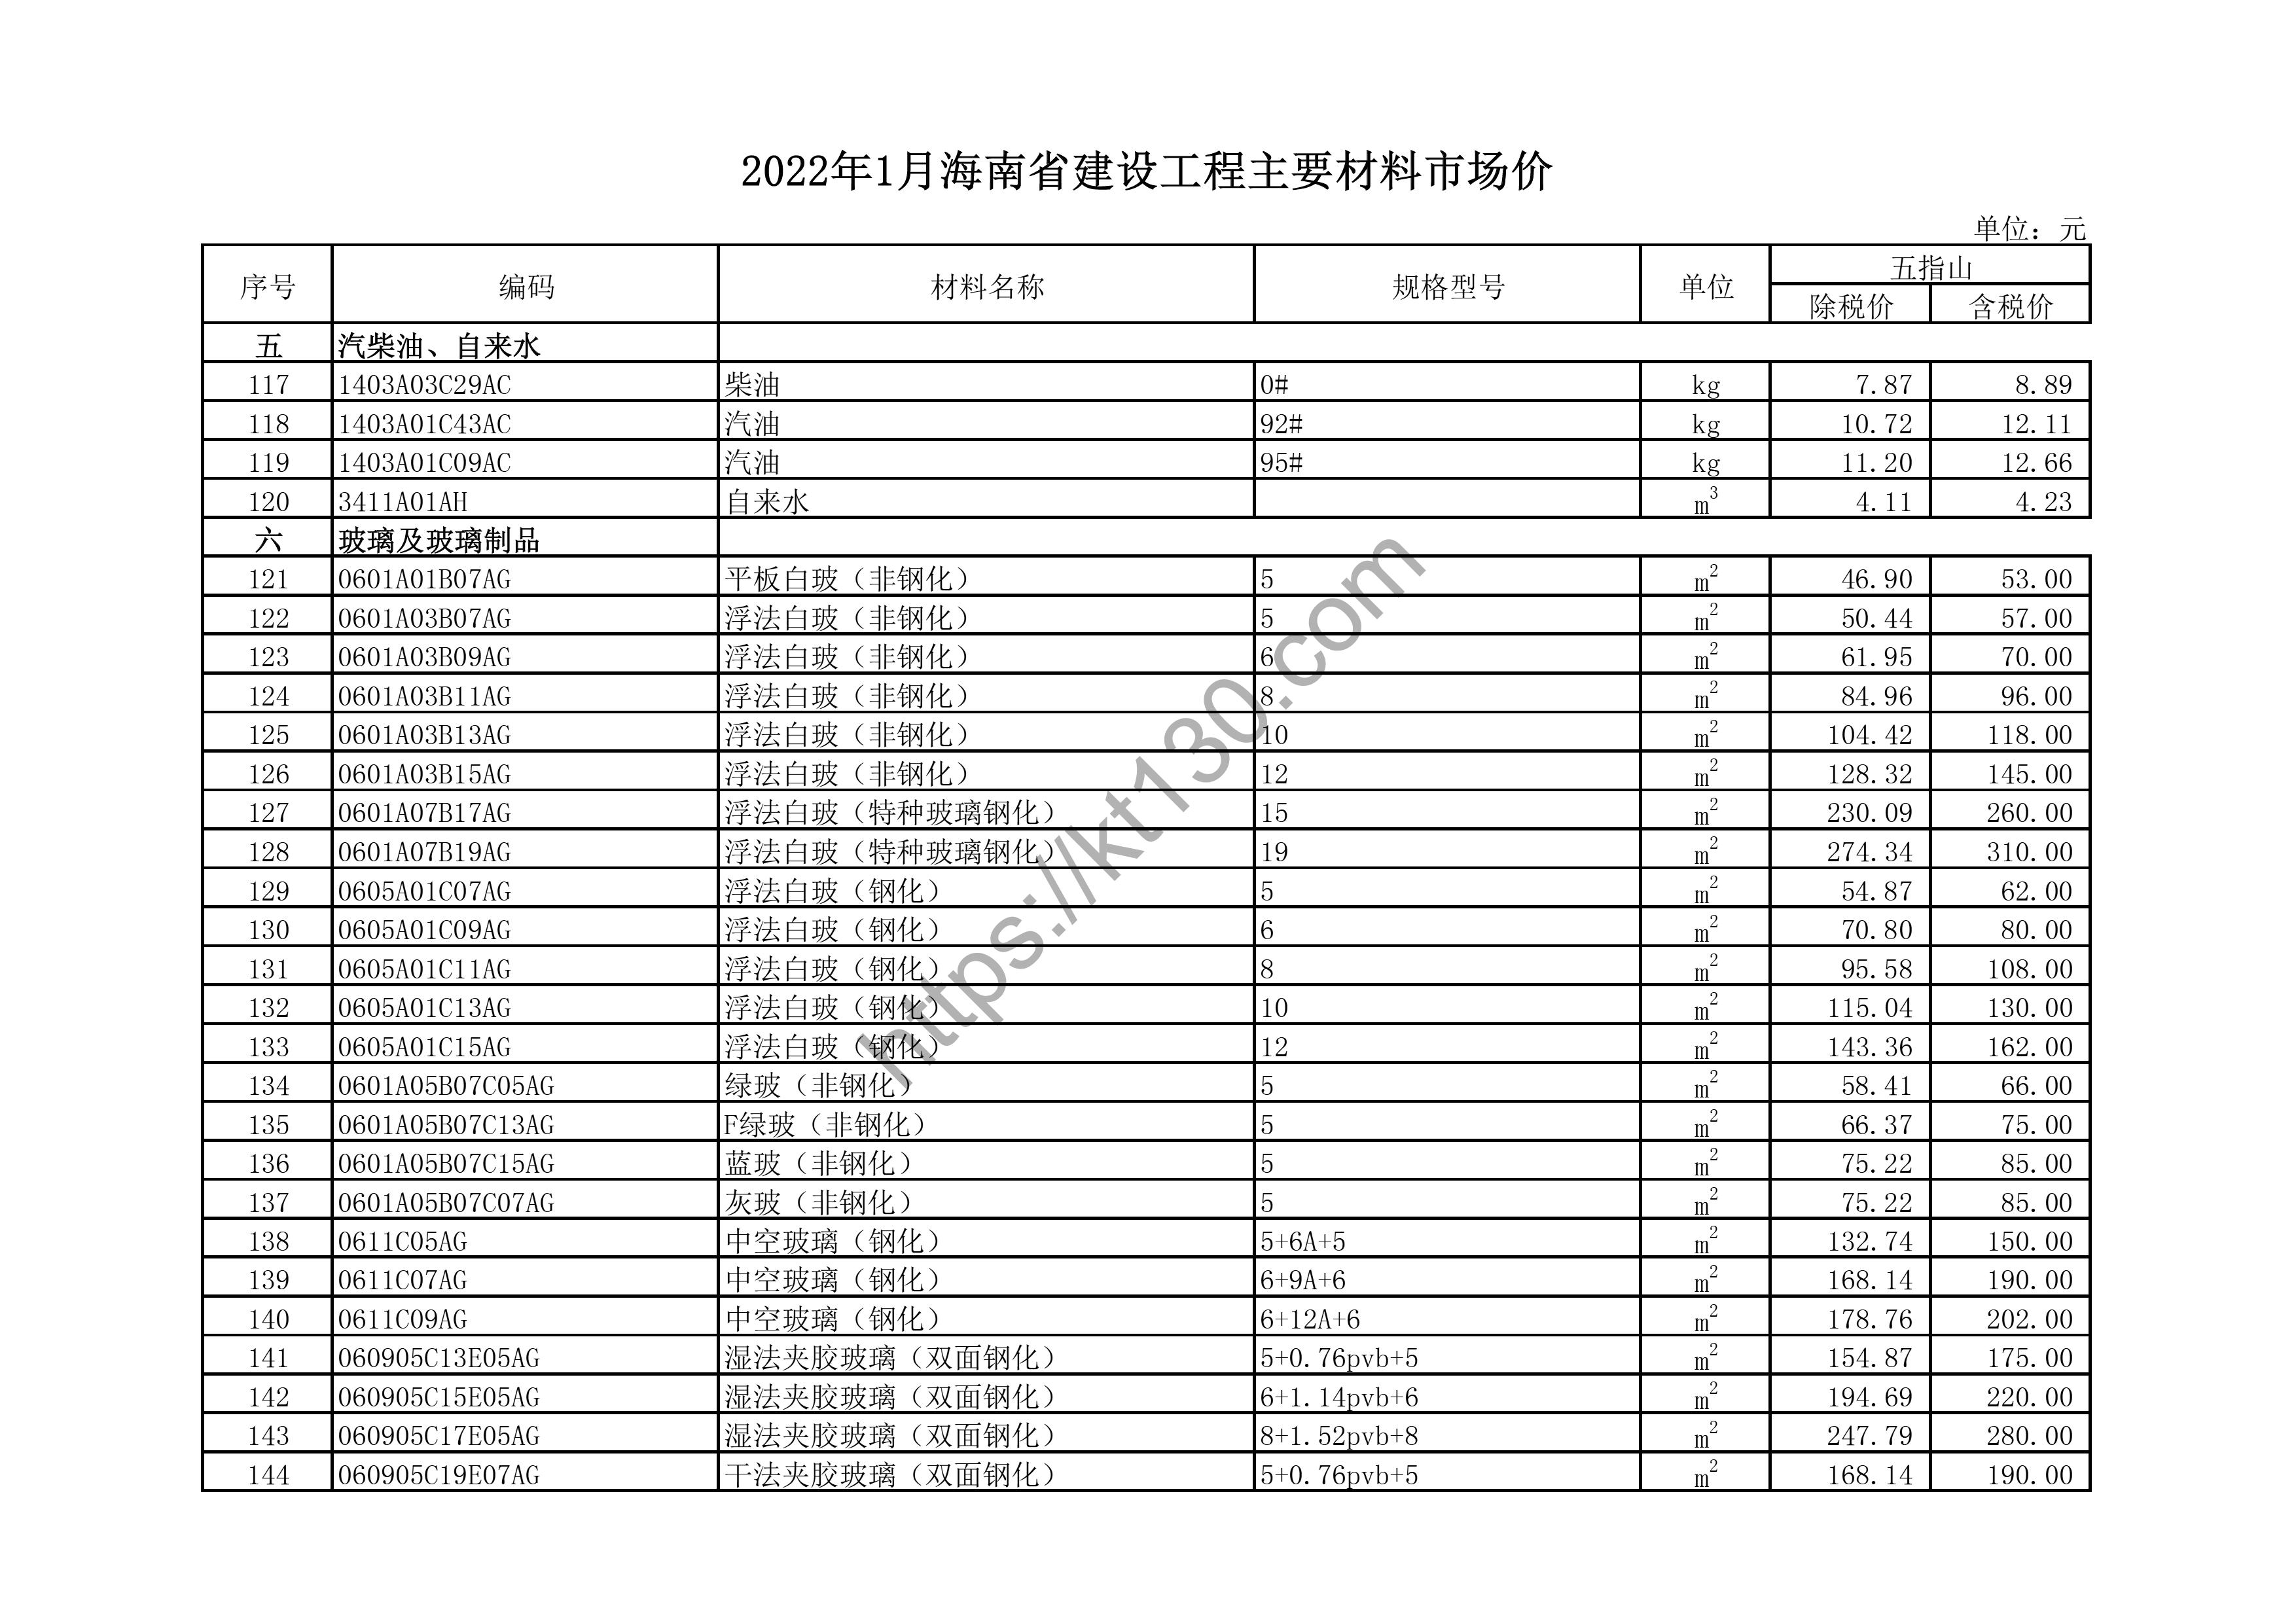 海南省2022年1月建筑材料价_双面钢化玻璃_43695